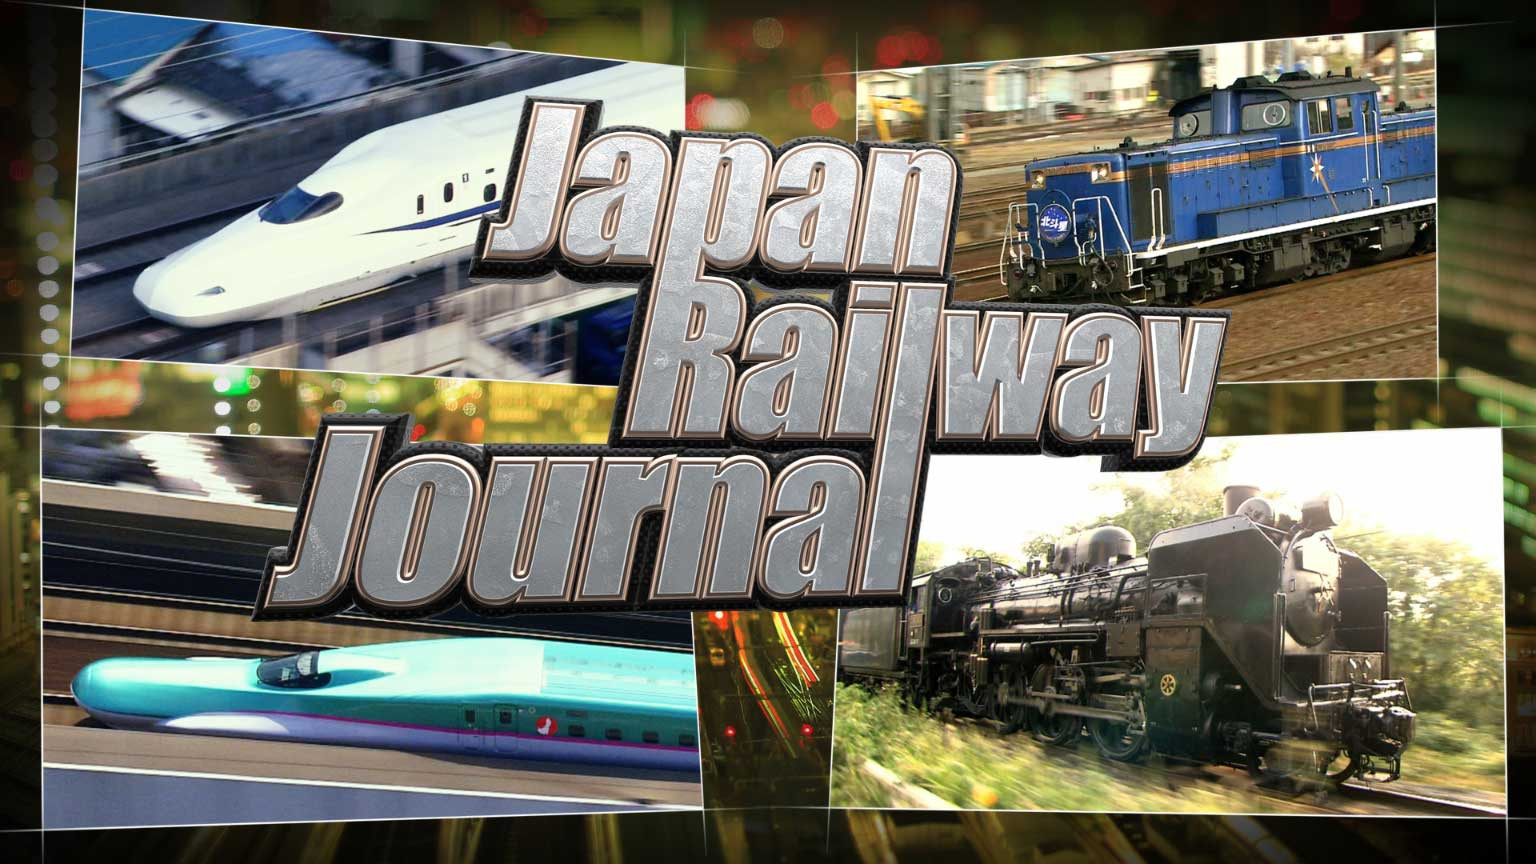 บันทึกการเดินทางด้วยการรถไฟในญี่ปุ่น
Japan Railway Journal